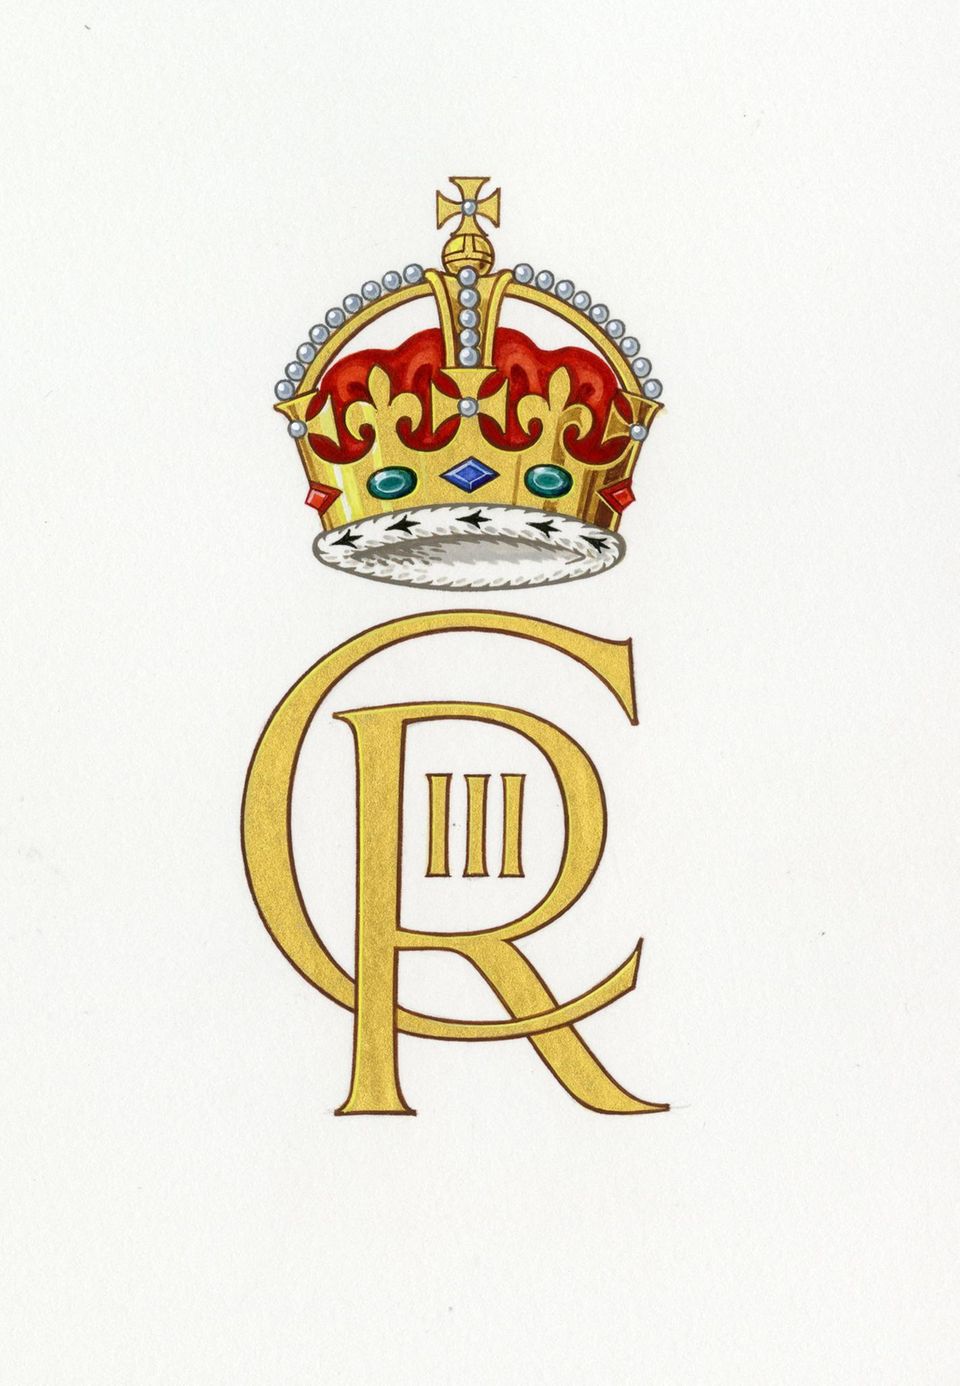 Dieses Monogramm wurde vom Buckingham Palast veröffentlicht, es zeigt das neue Wappen, das von König Charles III. verwendet werden wird. 